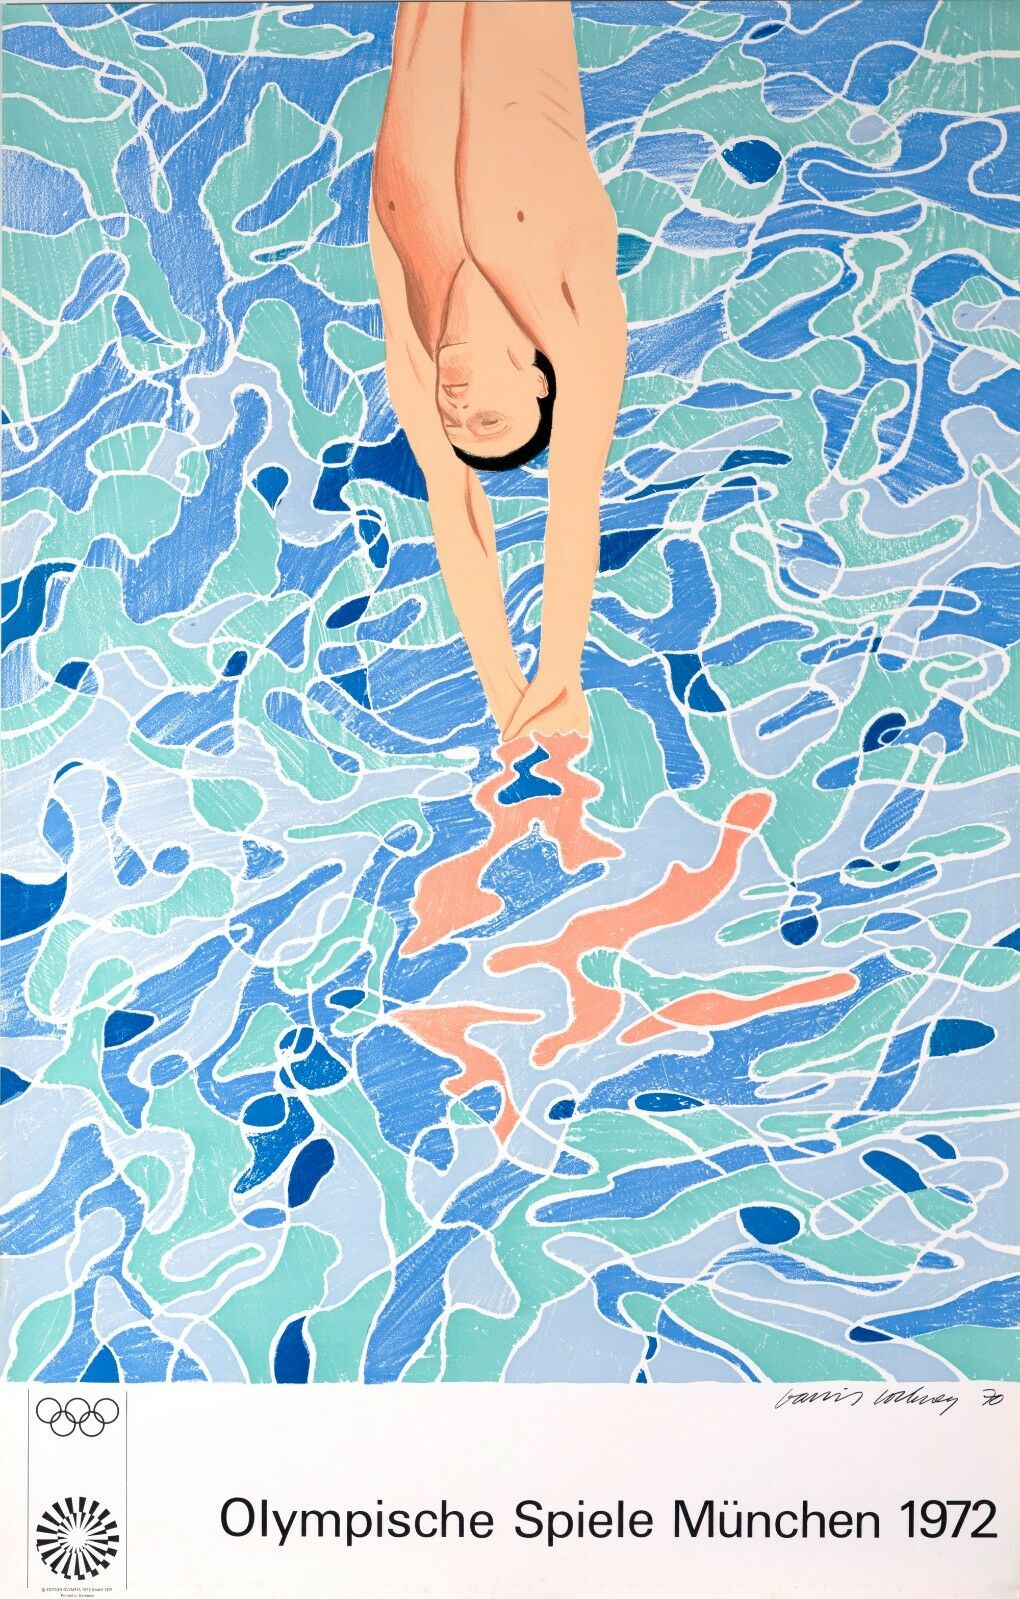 Hockney large Pool Diver Splash 1972 | David Hockney